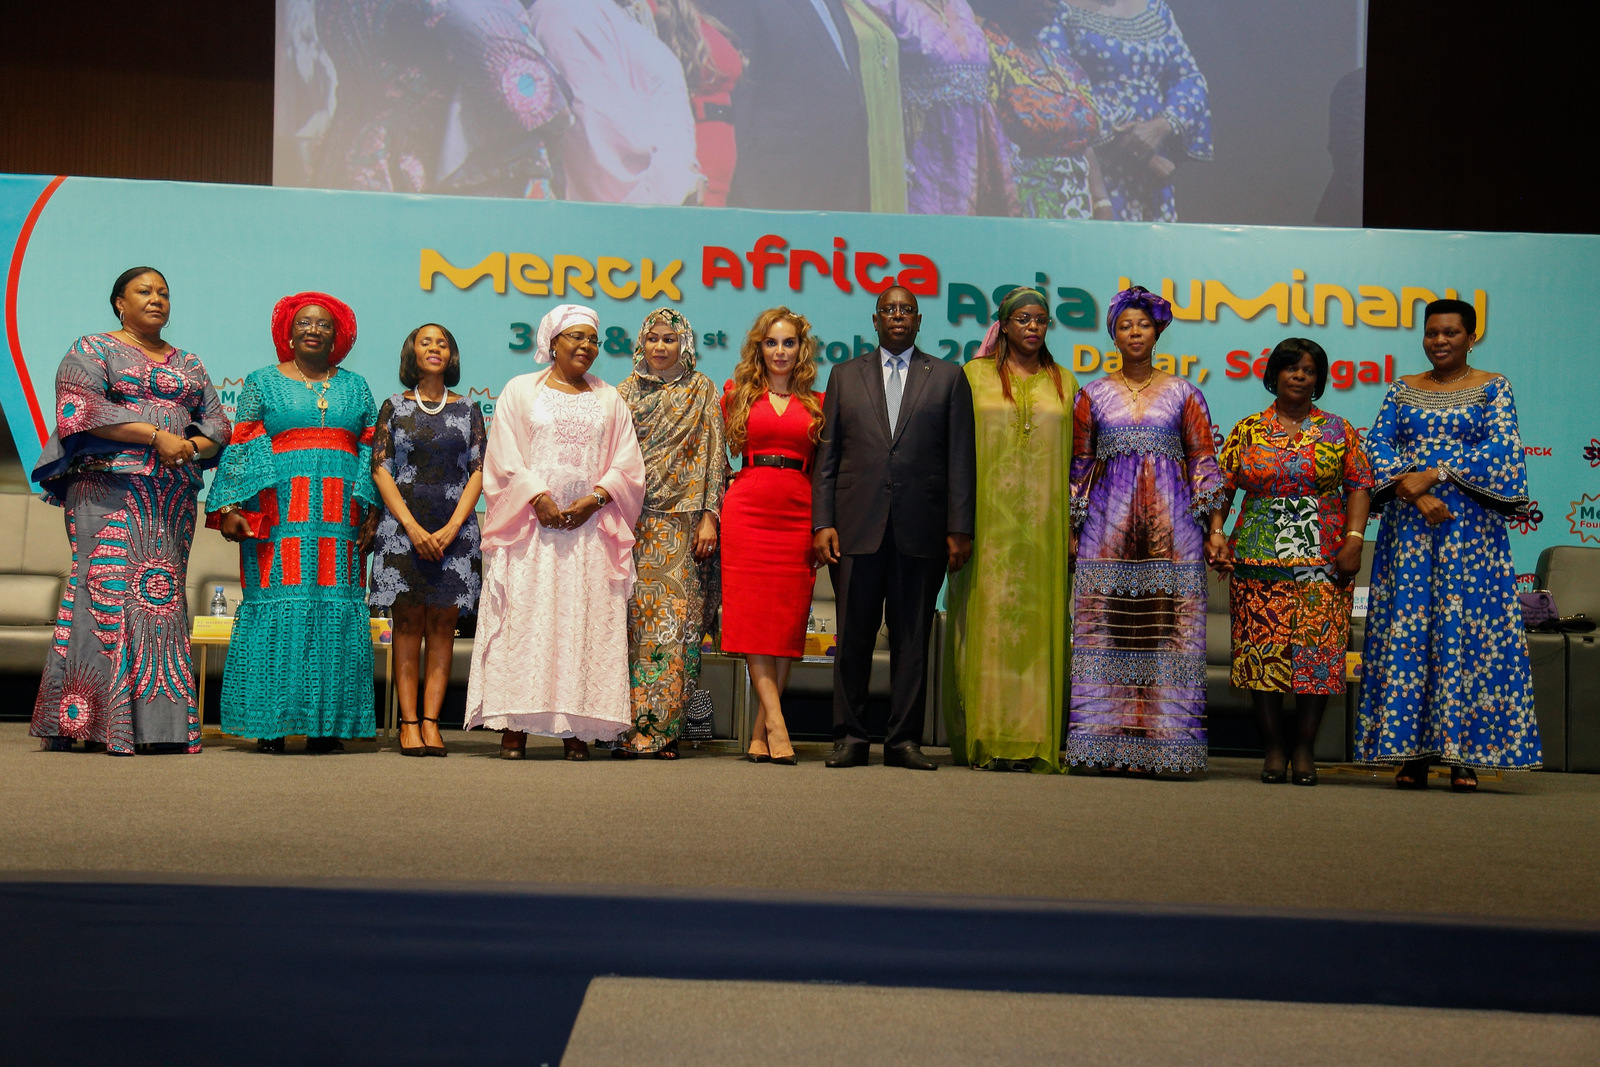 Afrique : le Tchad a pris part à la 5e édition de la conférence Merck Africa Asia Luminary au Sénégal